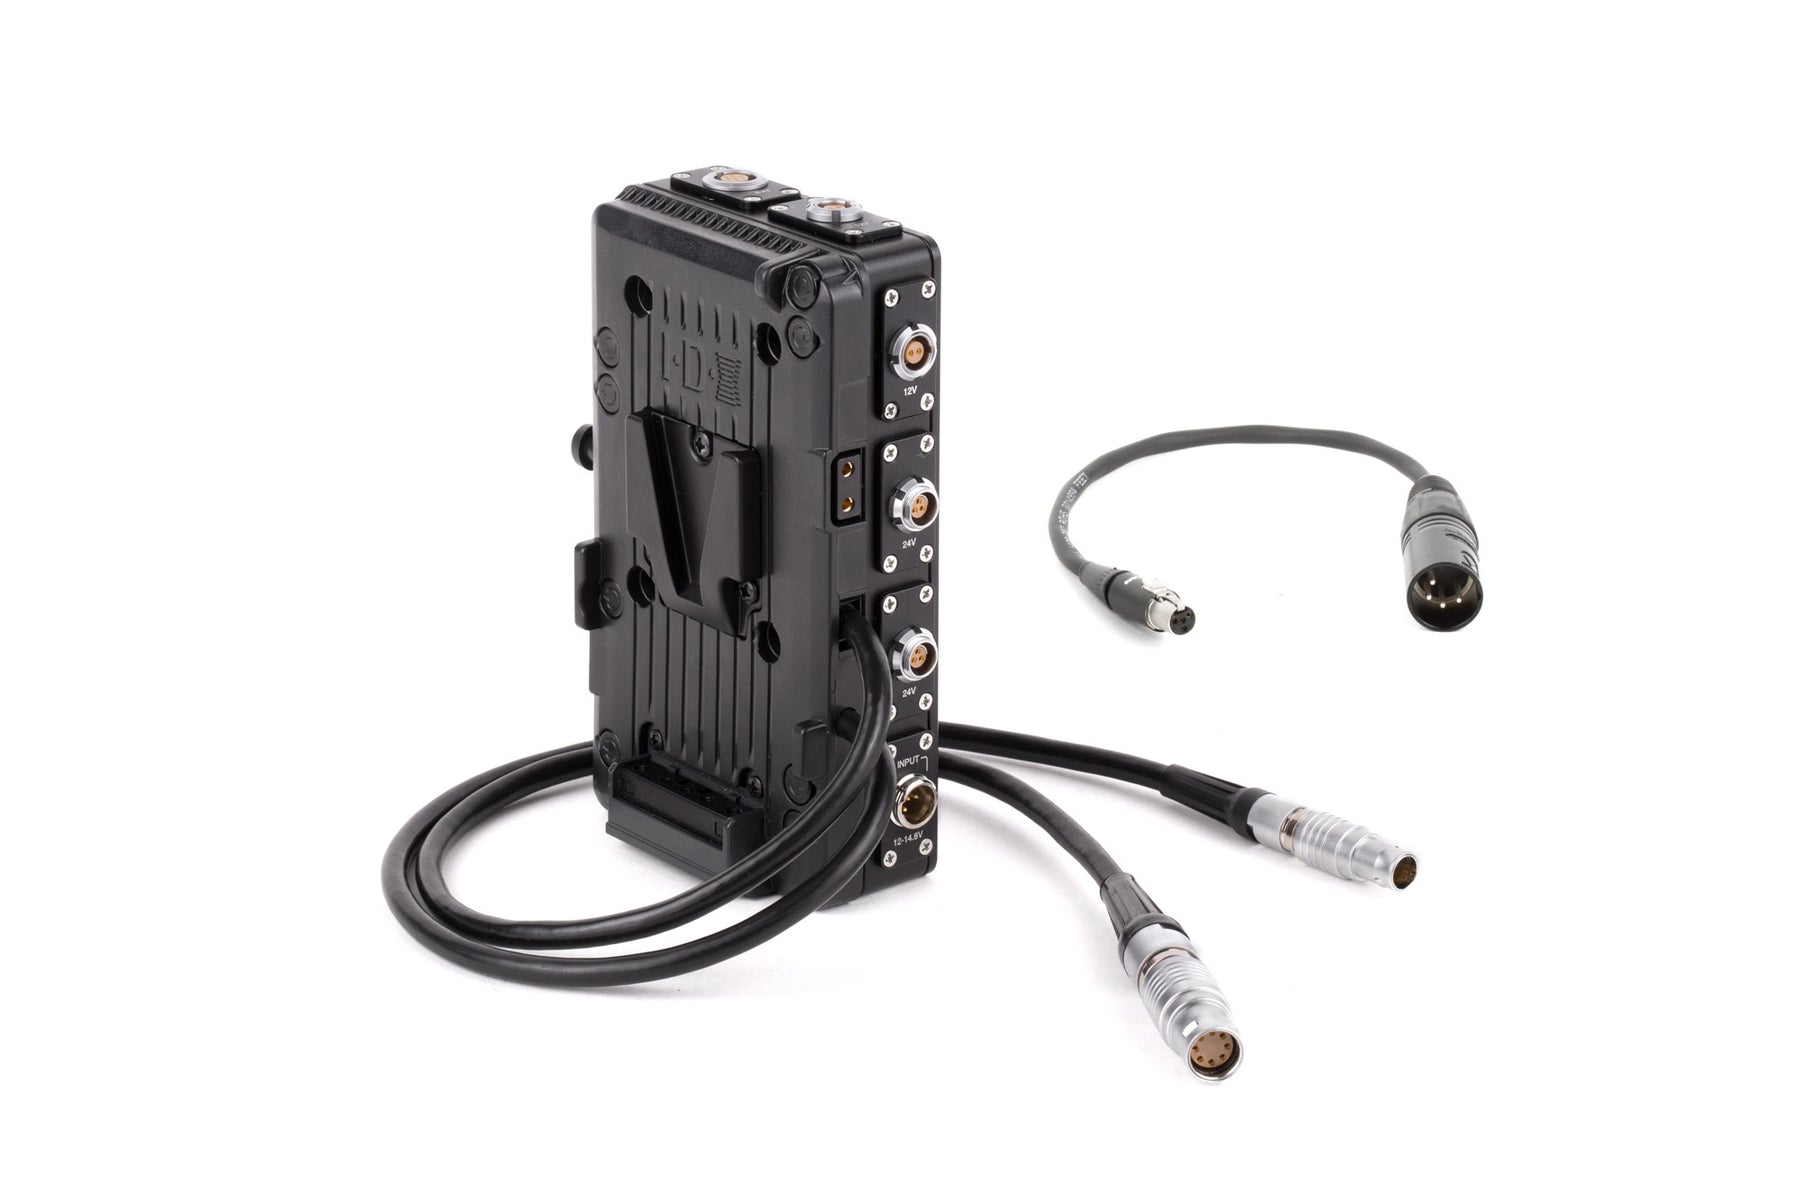 ARRI Alexa Camera Control Cable (Right Angle) — SmallHD